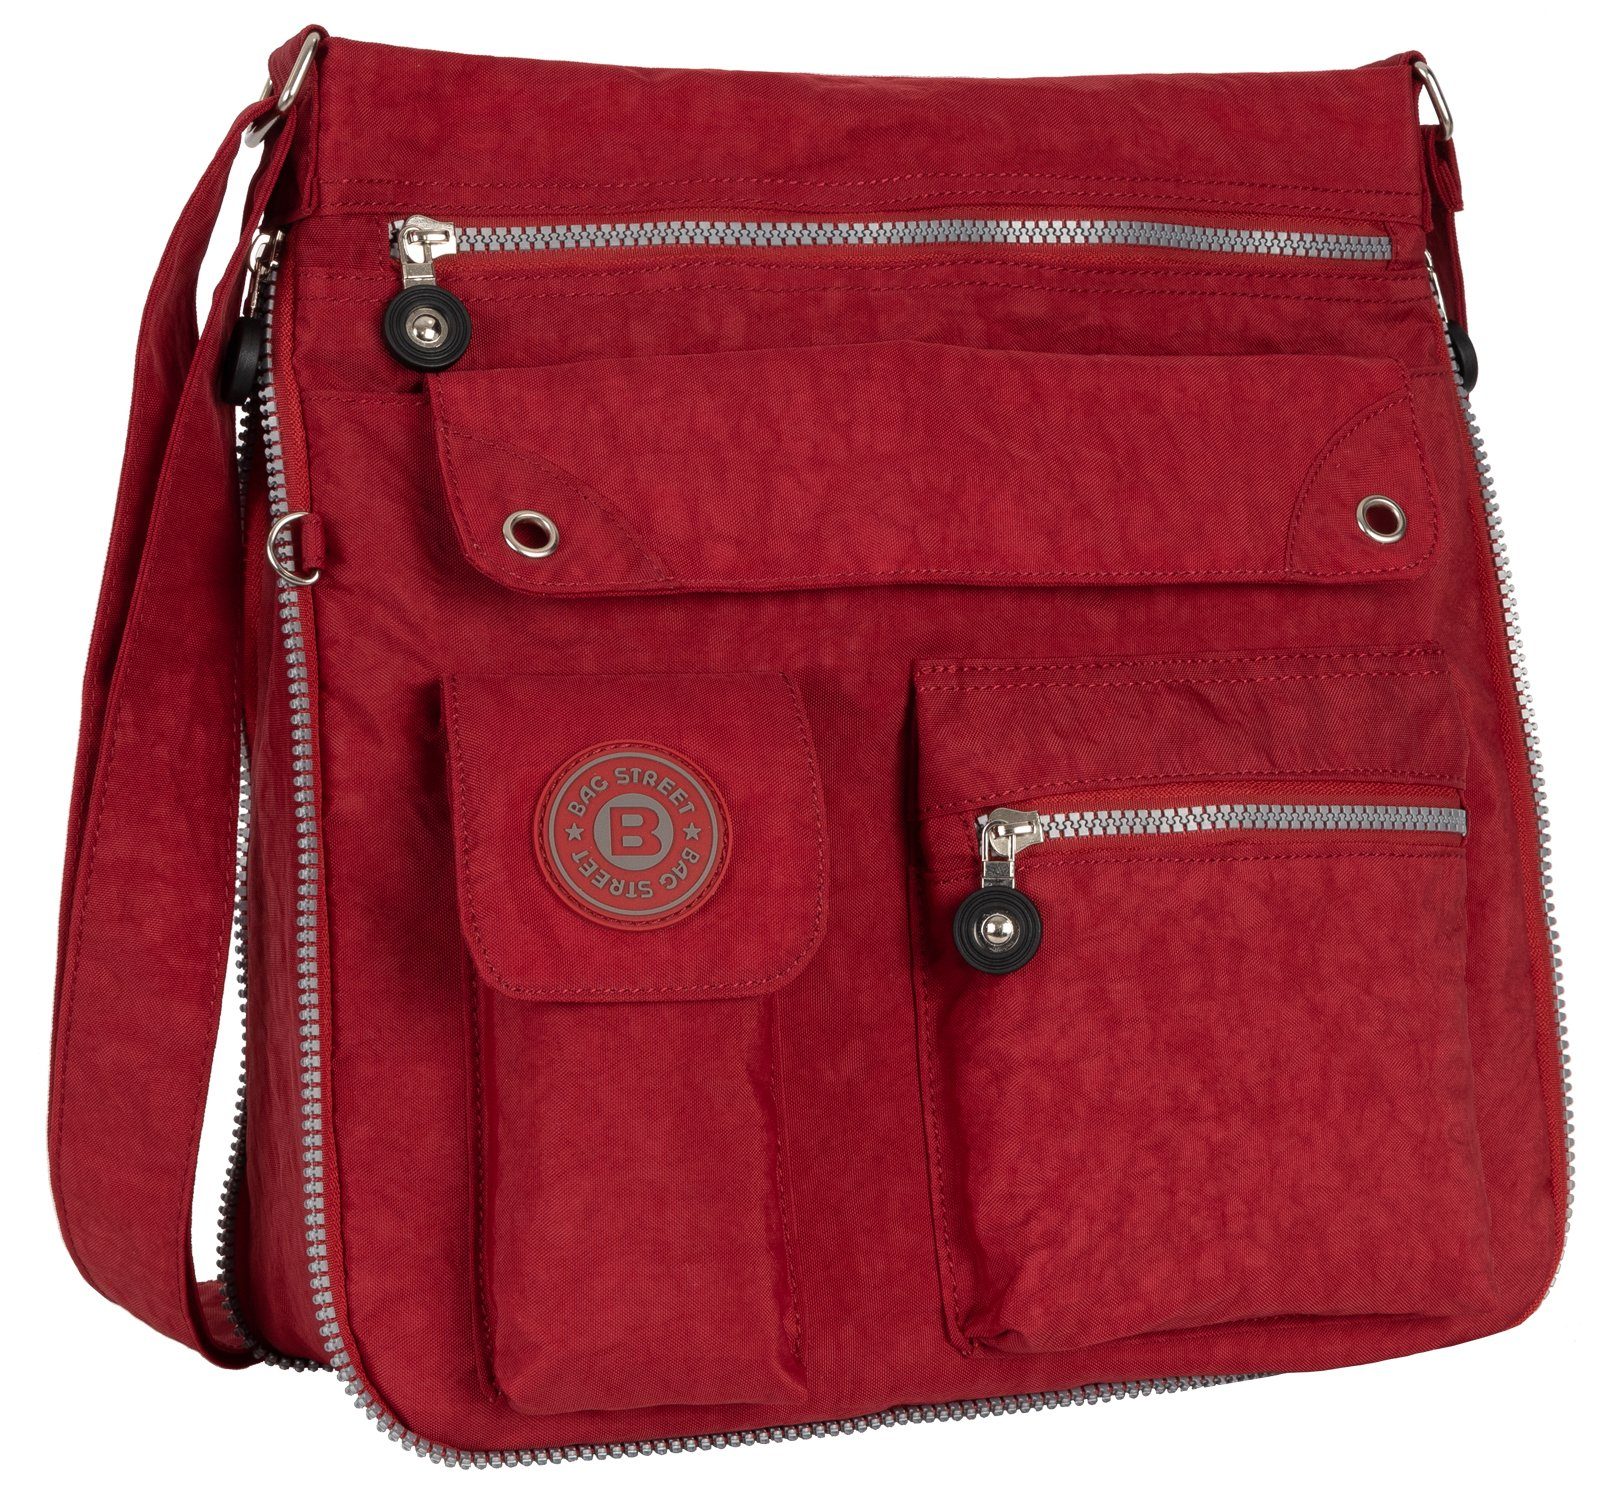 BAG STREET Schlüsseltasche Damentasche Umhängetasche Handtasche Schultertasche Schwarz, als Schultertasche, Umhängetasche tragbar Rot | Schlüsseltaschen